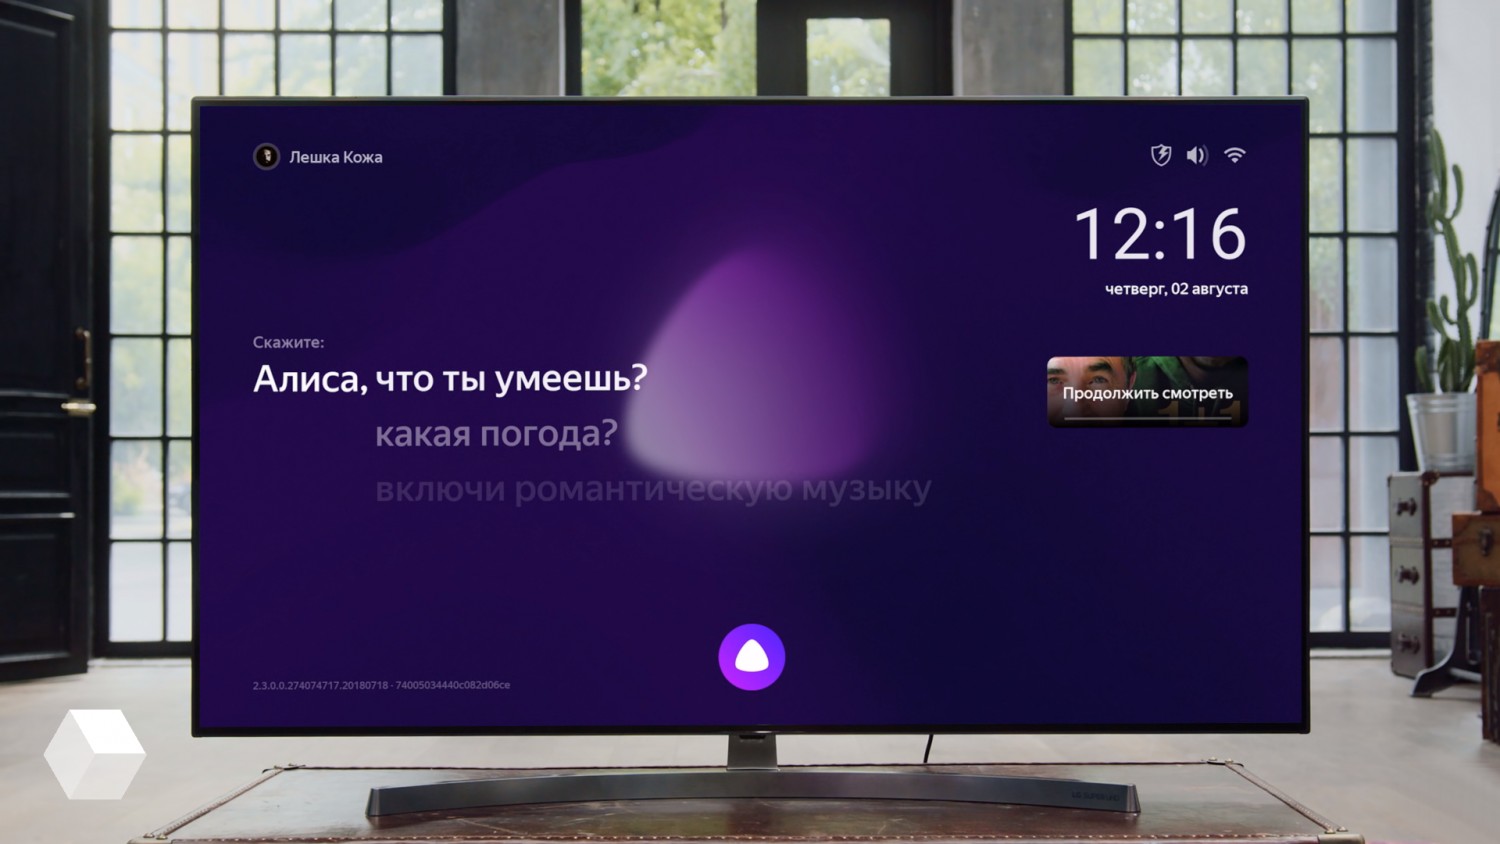 Интерфейс «Яндекс.Станции» обновился с новогодним оформлением и полезными индикаторами